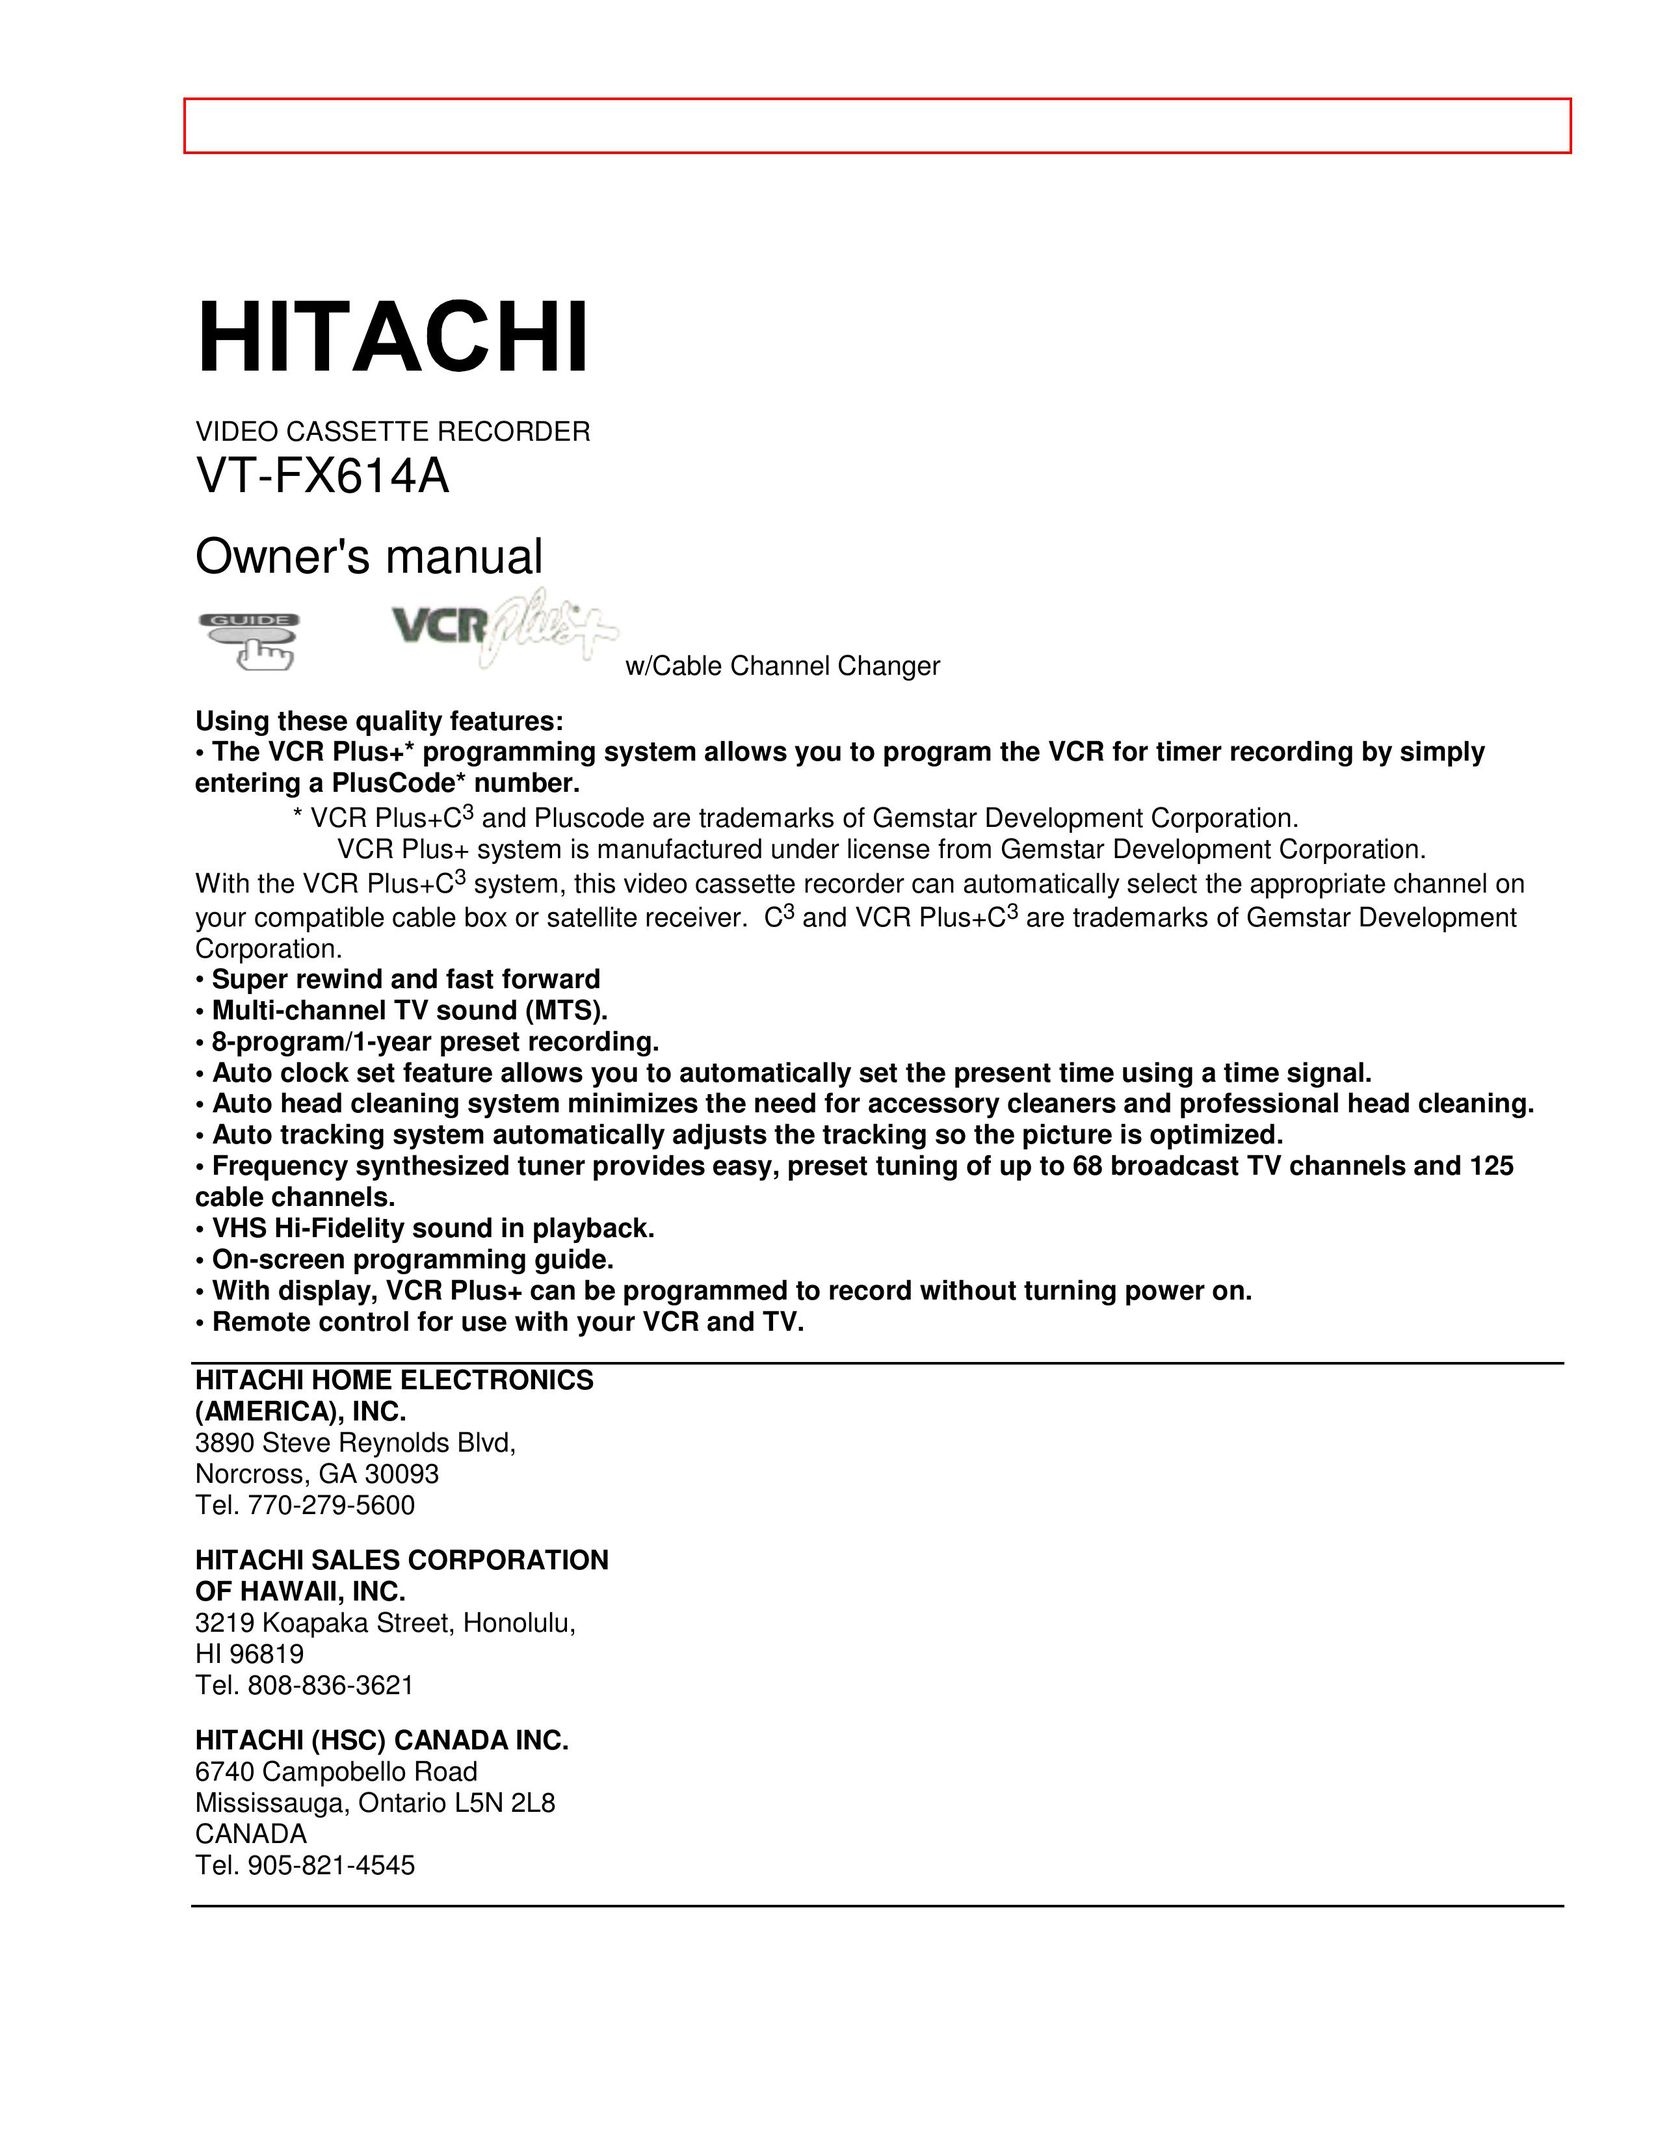 Hitachi VT-FX614A VCR User Manual